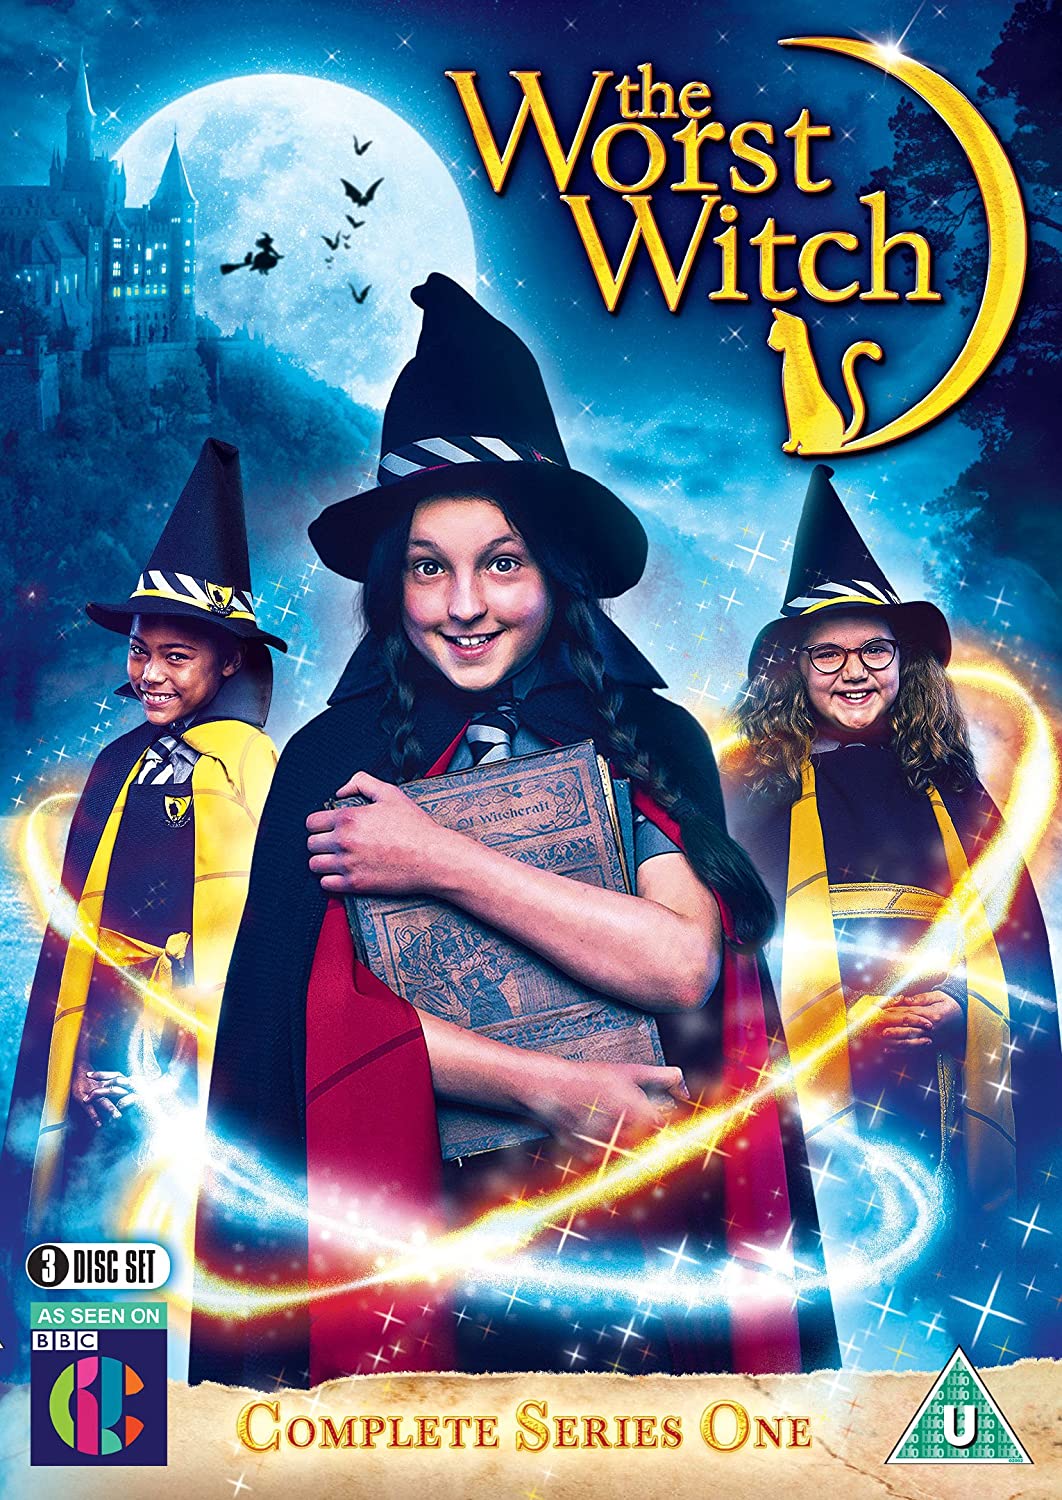 ดูหนังออนไลน์ฟรี The Worst Witch Season 3 (2019) โอมเพี้ยง! แม่มดน้อยสู้ตาย ซีซั่น 3 ตอนที่ 2